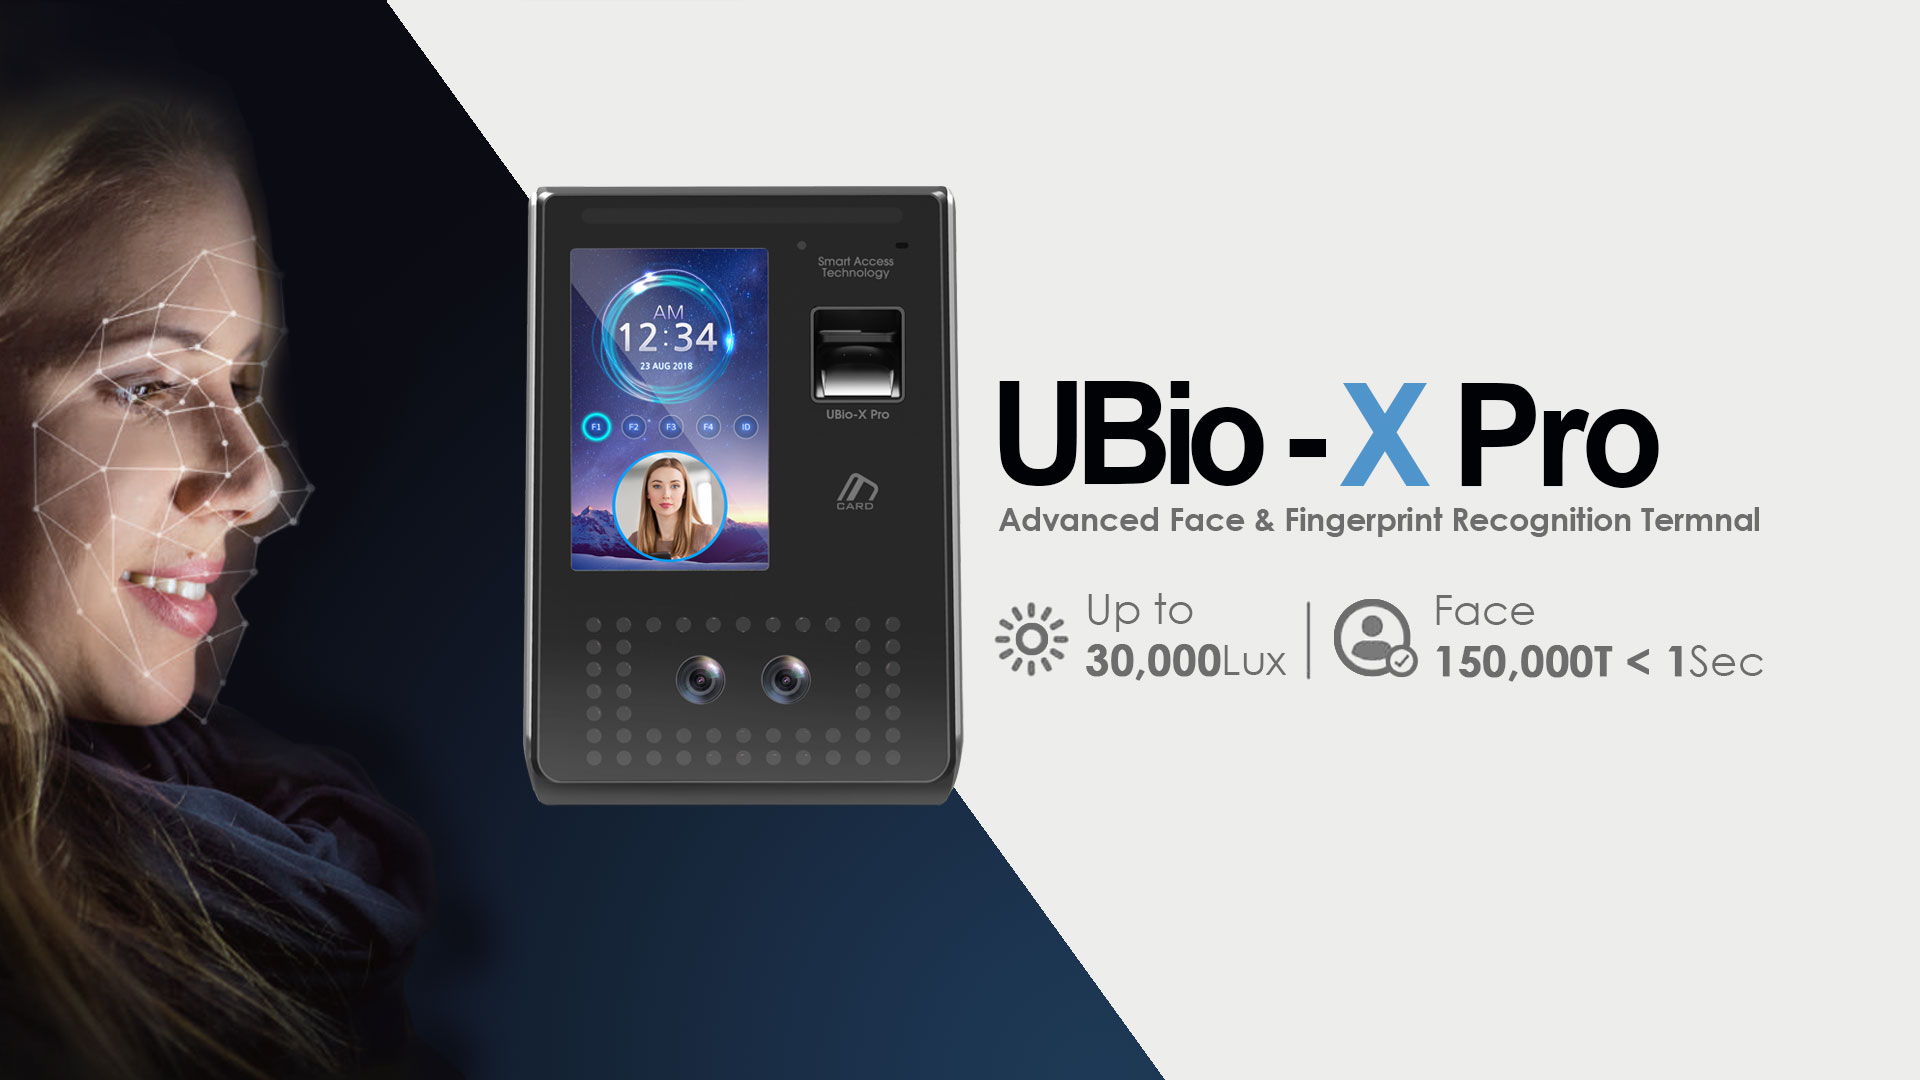 UBio-X Pro